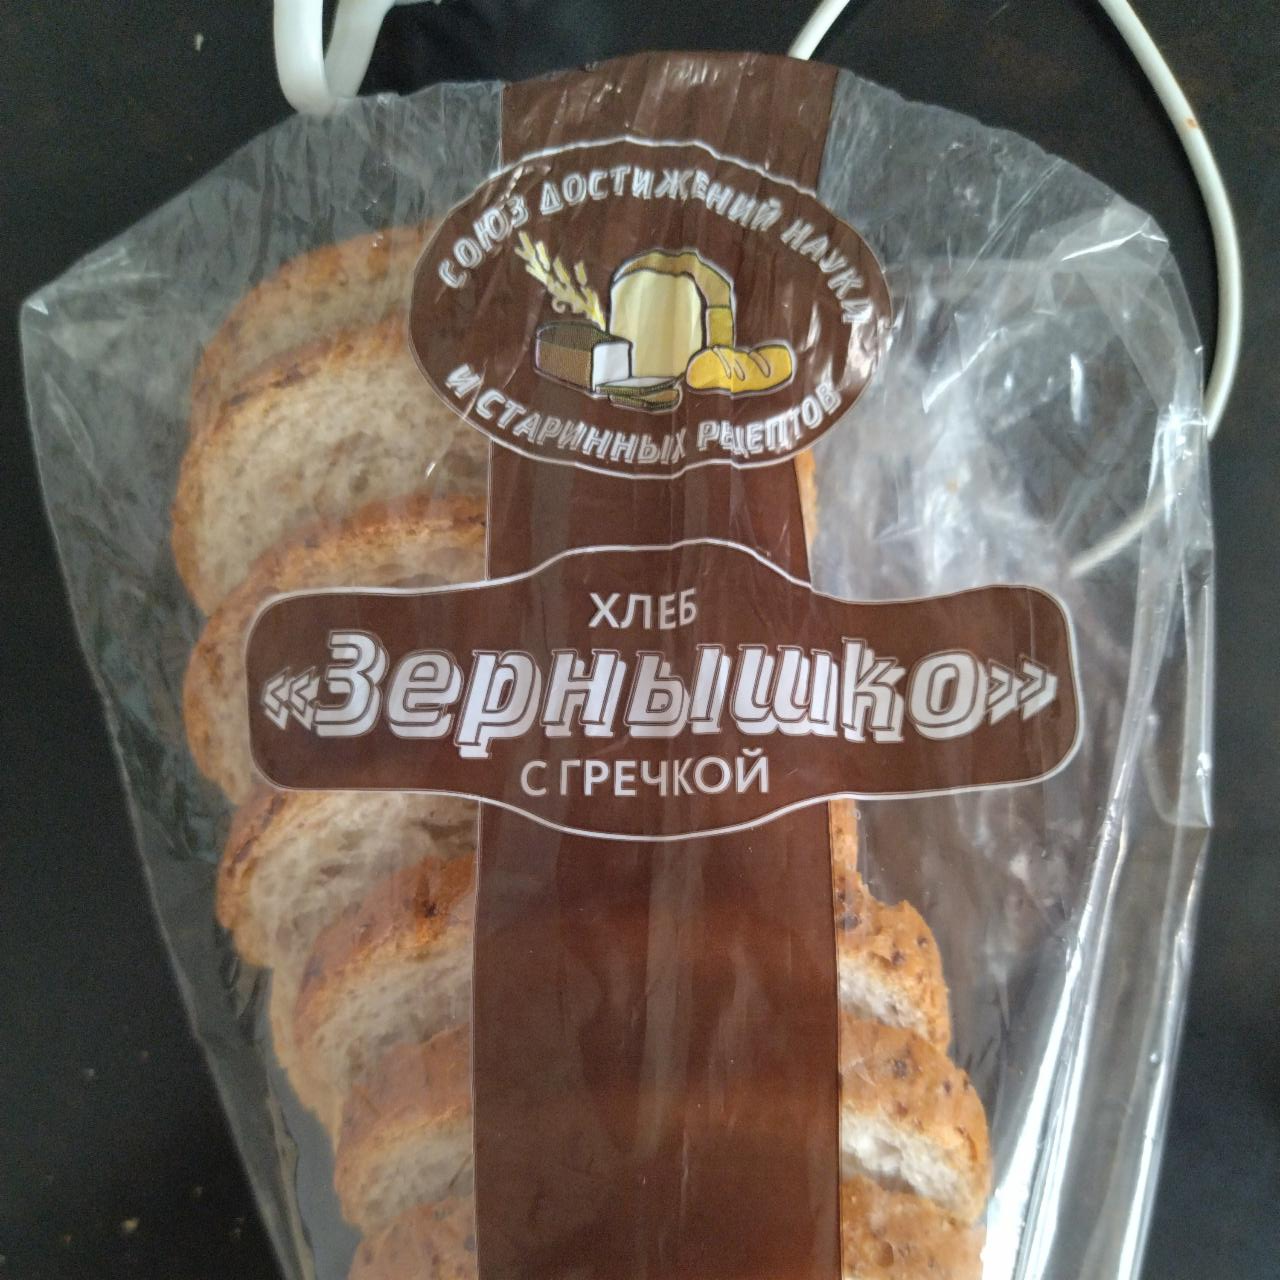 Фото - Хлеб Зëрнышко с греческой Прочноокопский хлеб